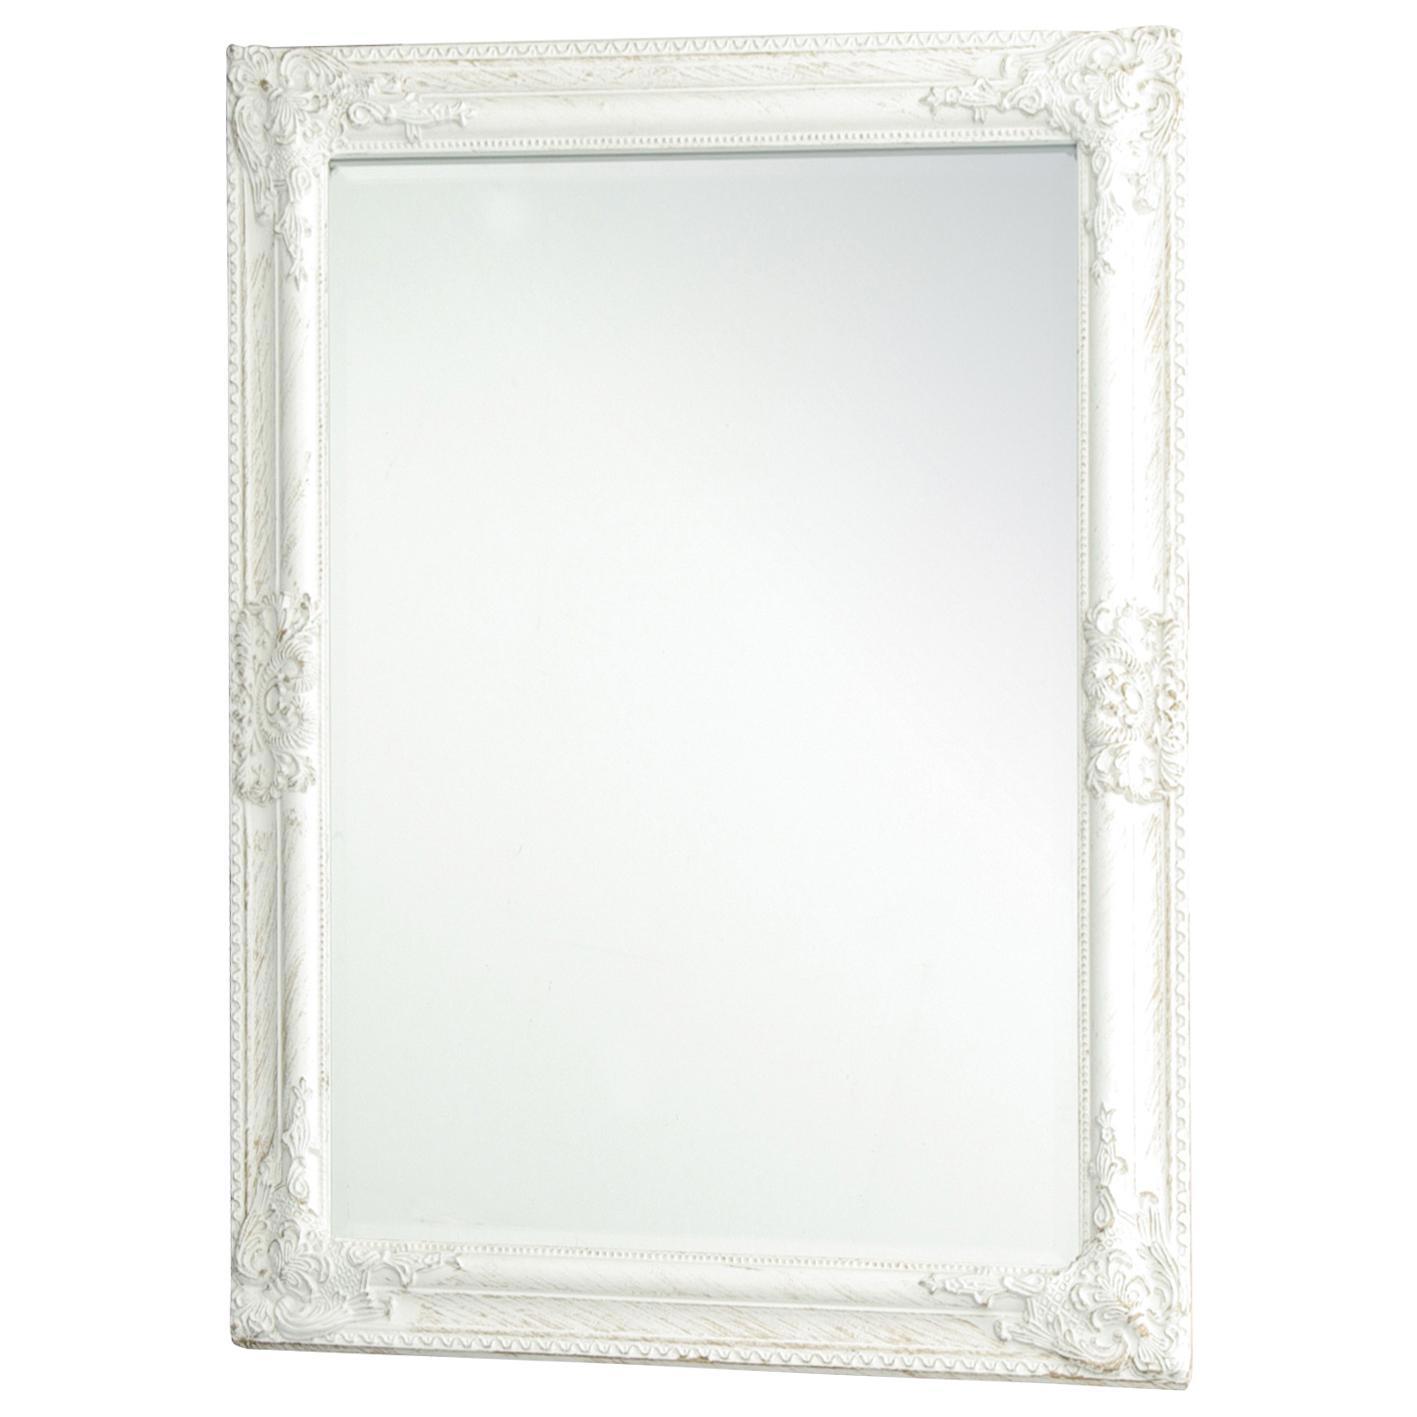 Купить зеркало в оренбурге. Леруа Мерлен зеркала настенные. Зеркало Antique в деревянной раме с фацетом. Зеркало Вико Роберто Люкс 60х100. Зеркало в раме Antique 720x1620мм.